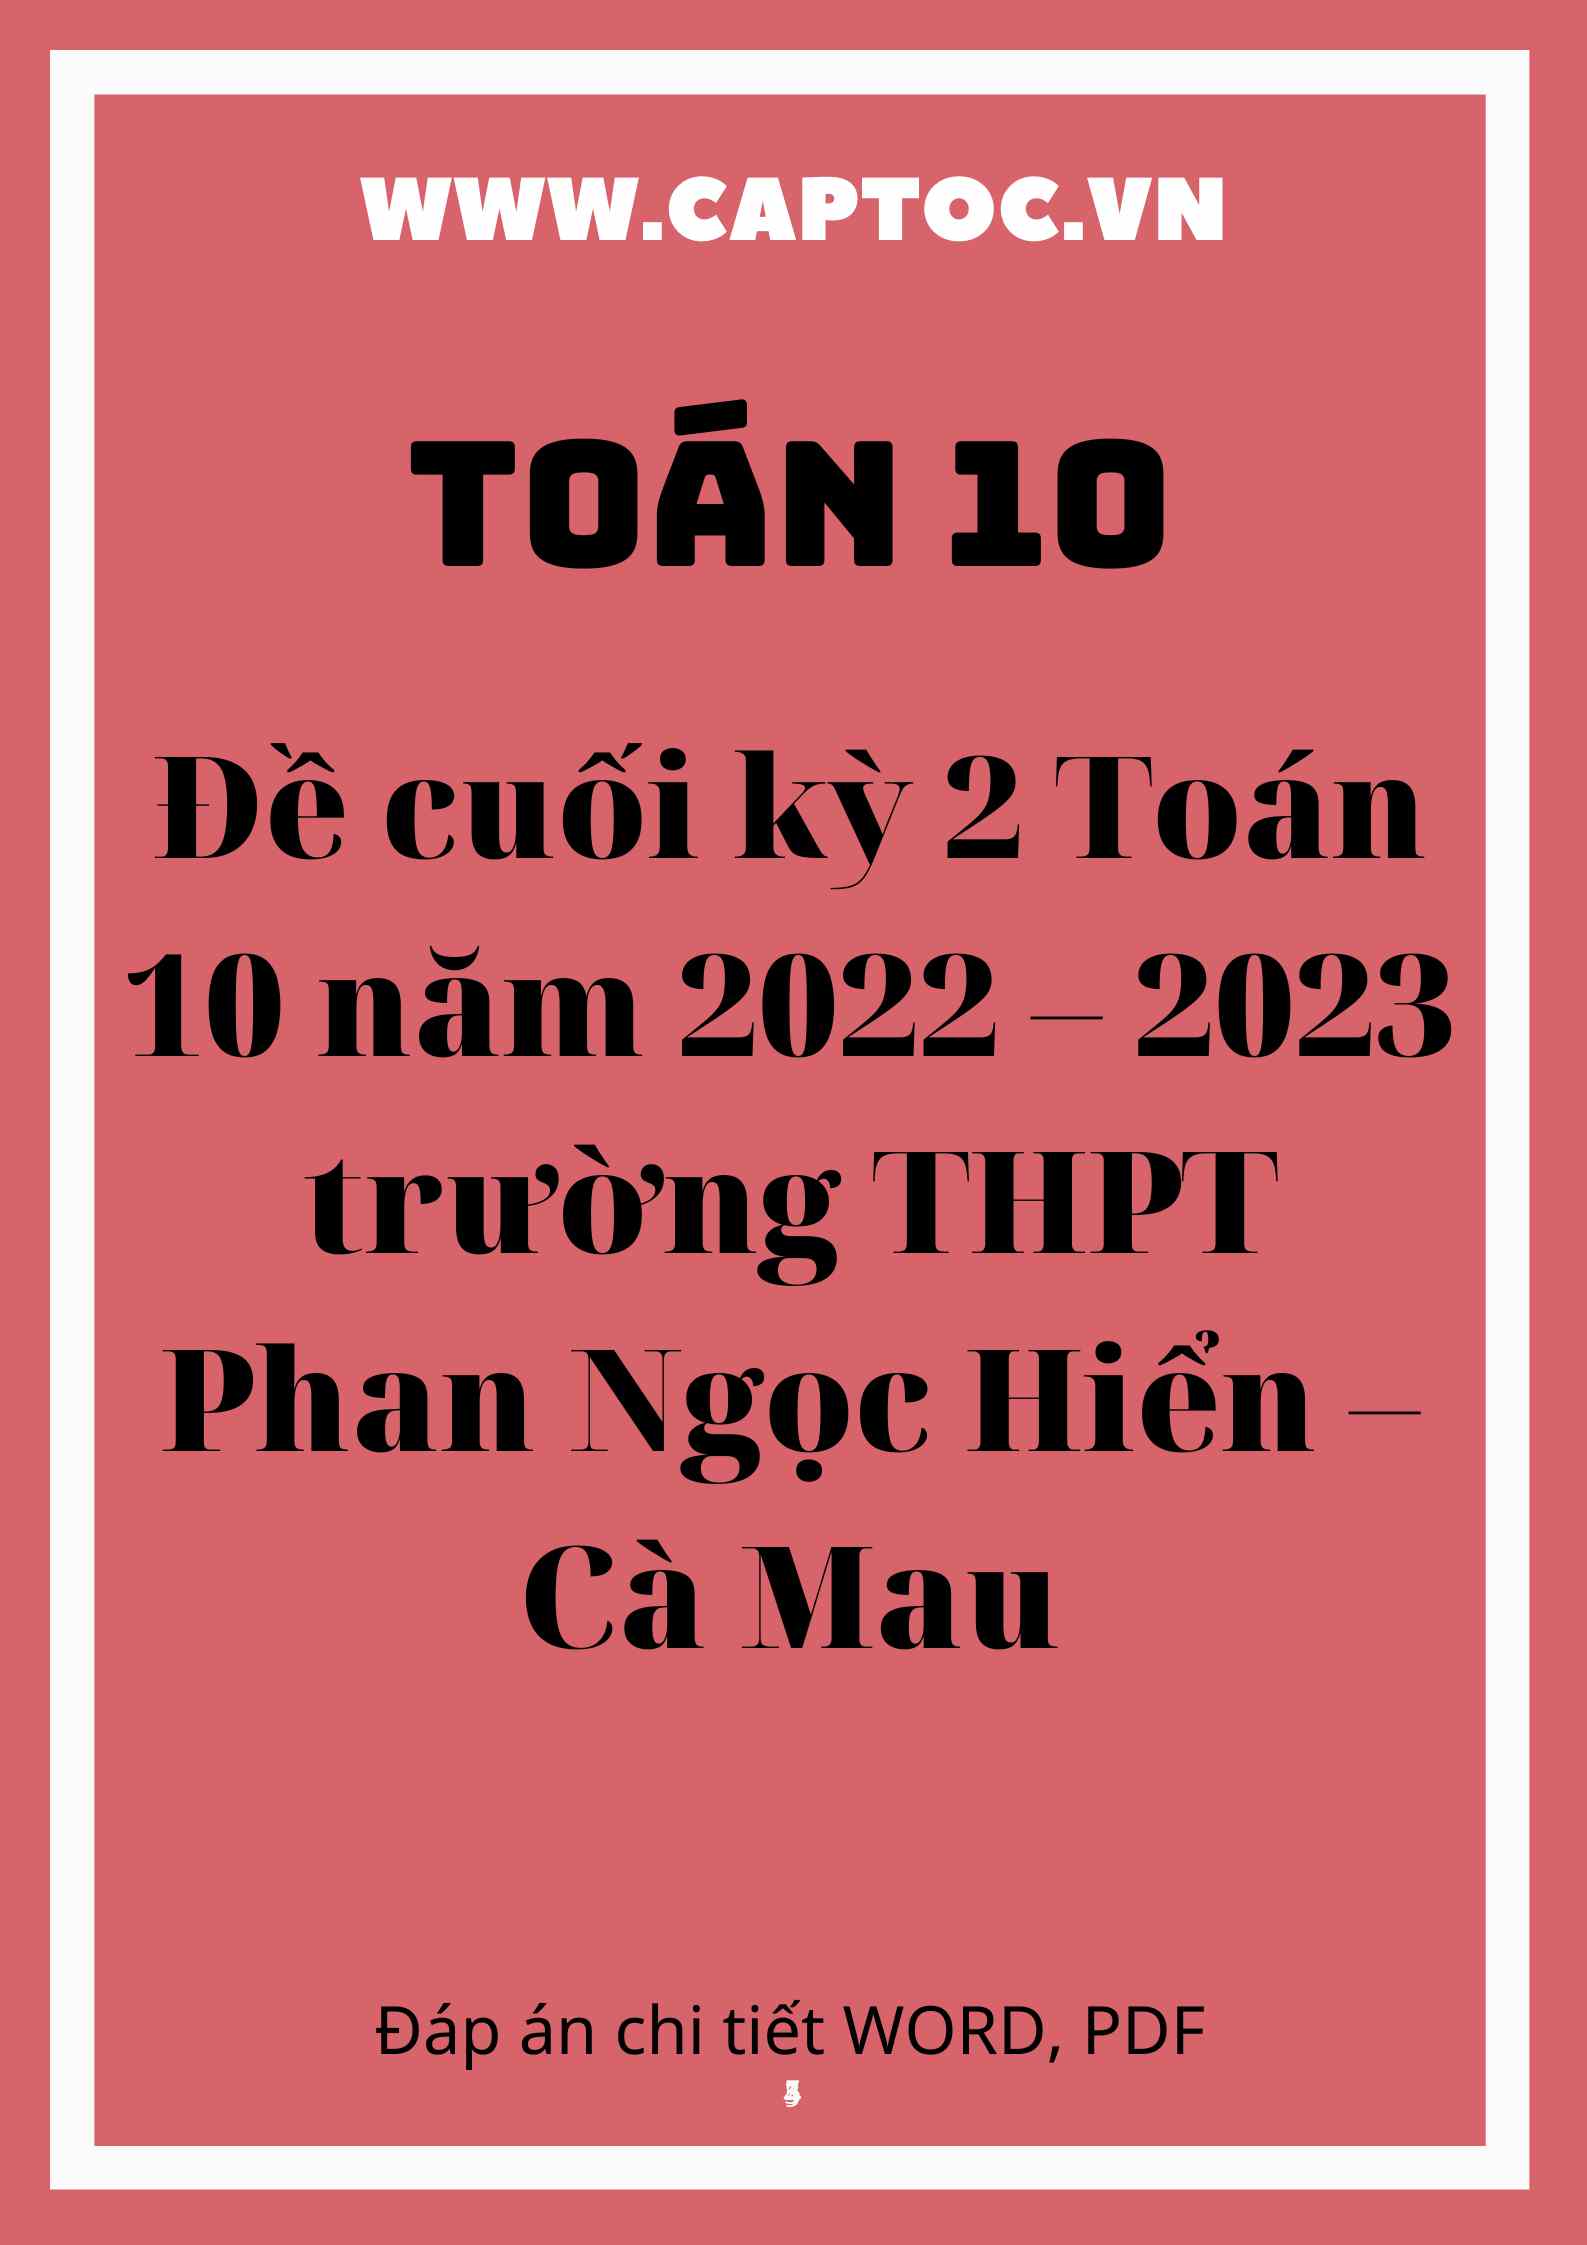 Đề cuối kỳ 2 Toán 10 năm 2022 – 2023 trường THPT Phan Ngọc Hiển – Cà Mau